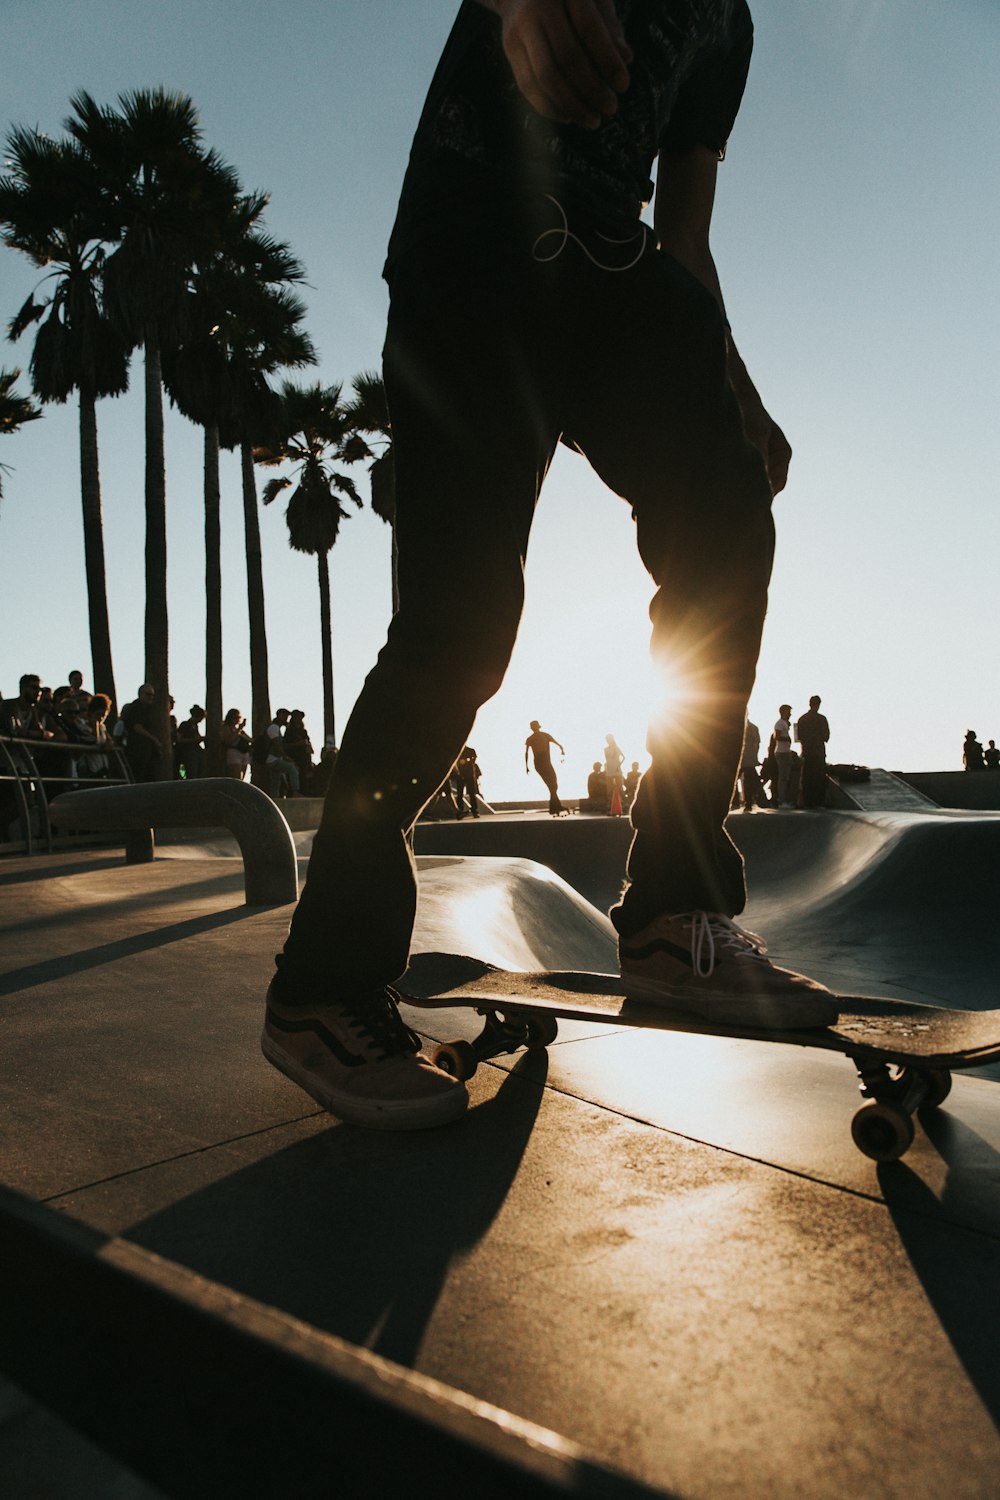 man riding on skateboard photo – Free United states Image on Unsplash